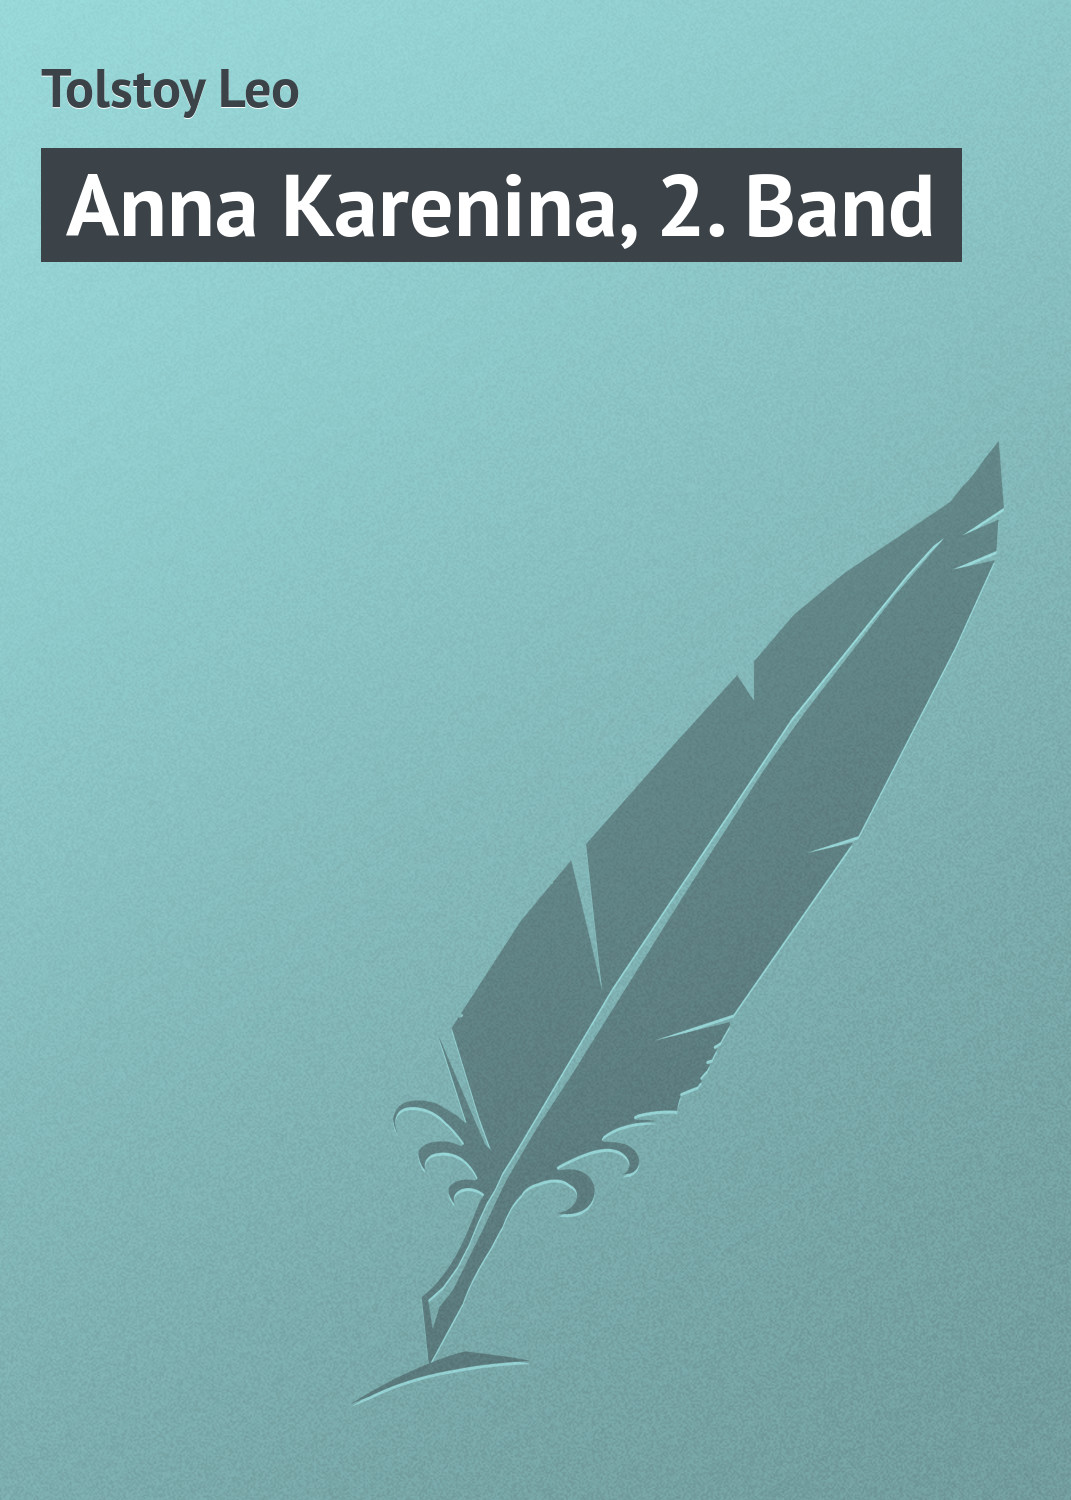 Книга Anna Karenina, 2. Band из серии , созданная Leo Tolstoy, может относится к жанру Зарубежная классика. Стоимость электронной книги Anna Karenina, 2. Band с идентификатором 23167875 составляет 0 руб.